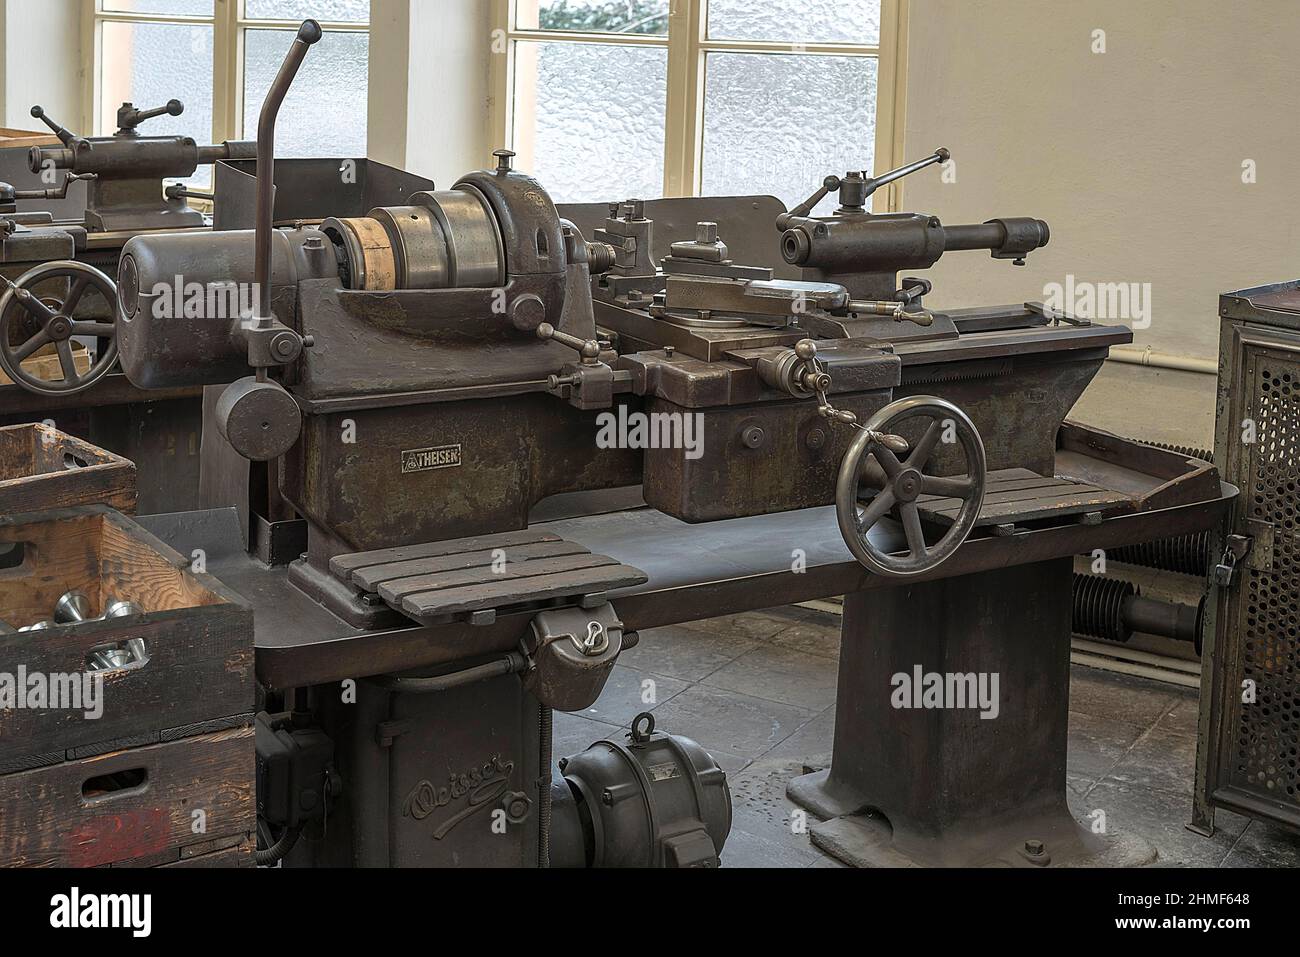 Industriemuseum lauf an der pegnitz -Fotos und -Bildmaterial in hoher  Auflösung – Alamy